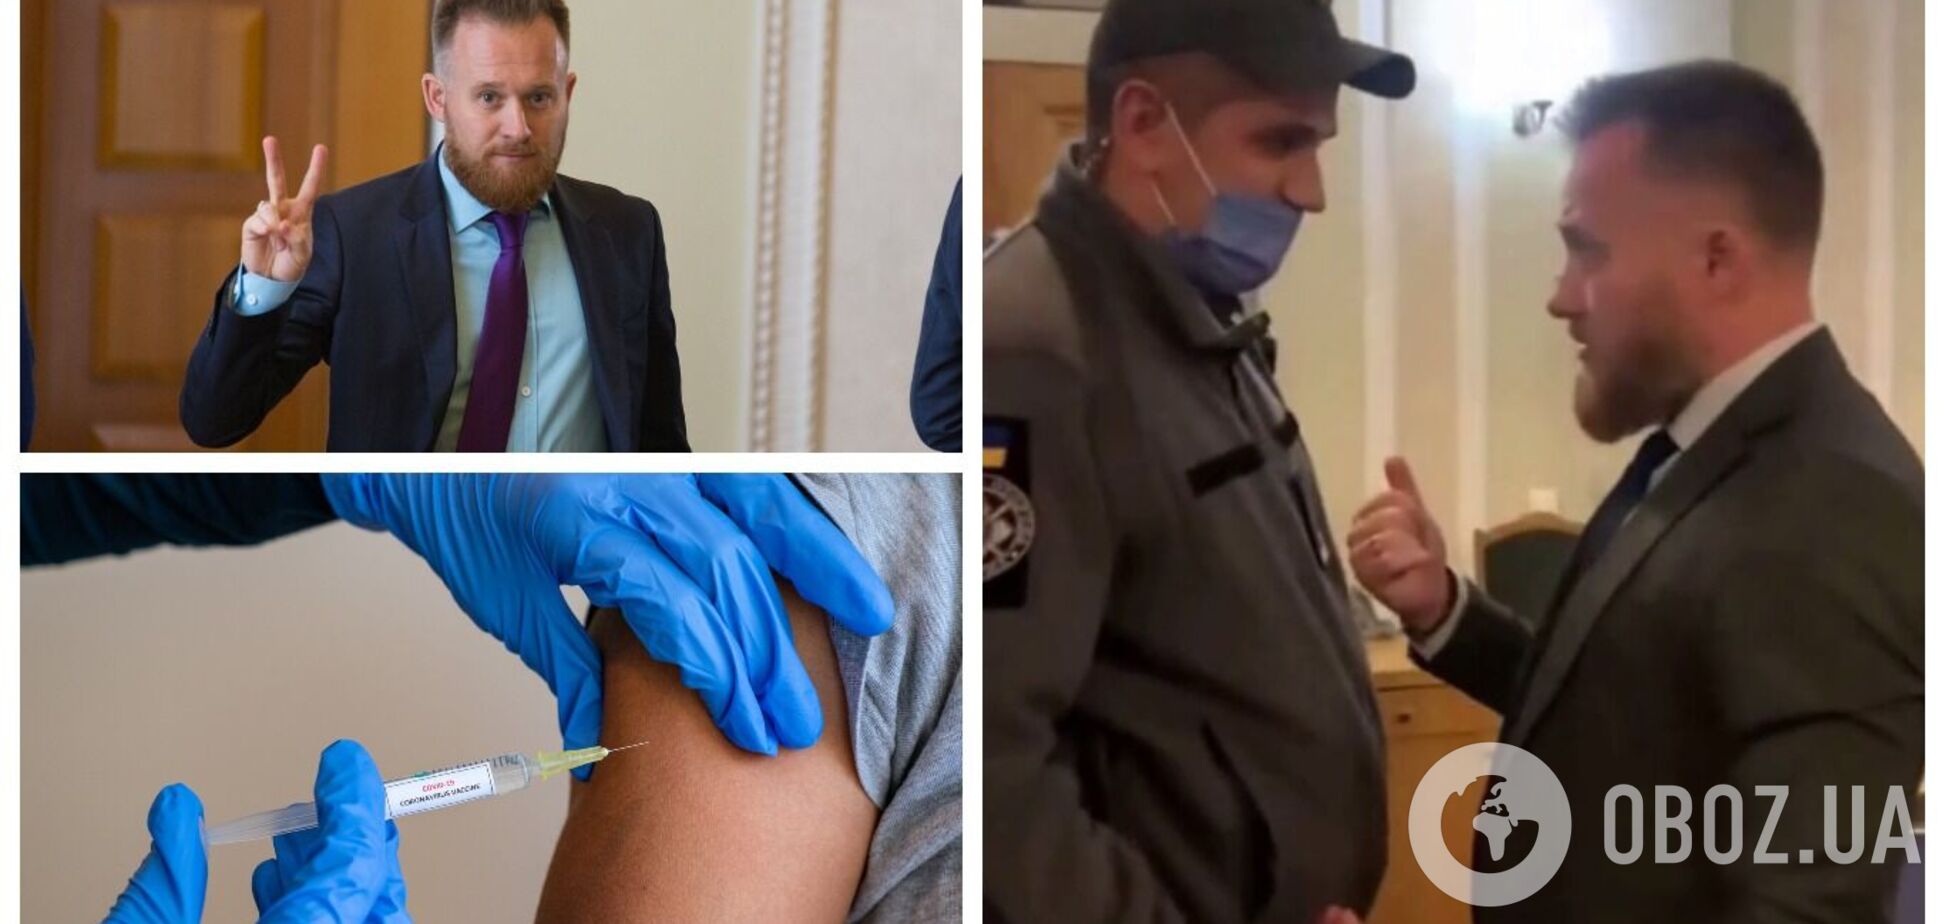 'Слуга' Камельчук, який виступив проти вакцинації від COVID-19, влаштував суперечку з охоронцями в Раді через тест. Відео